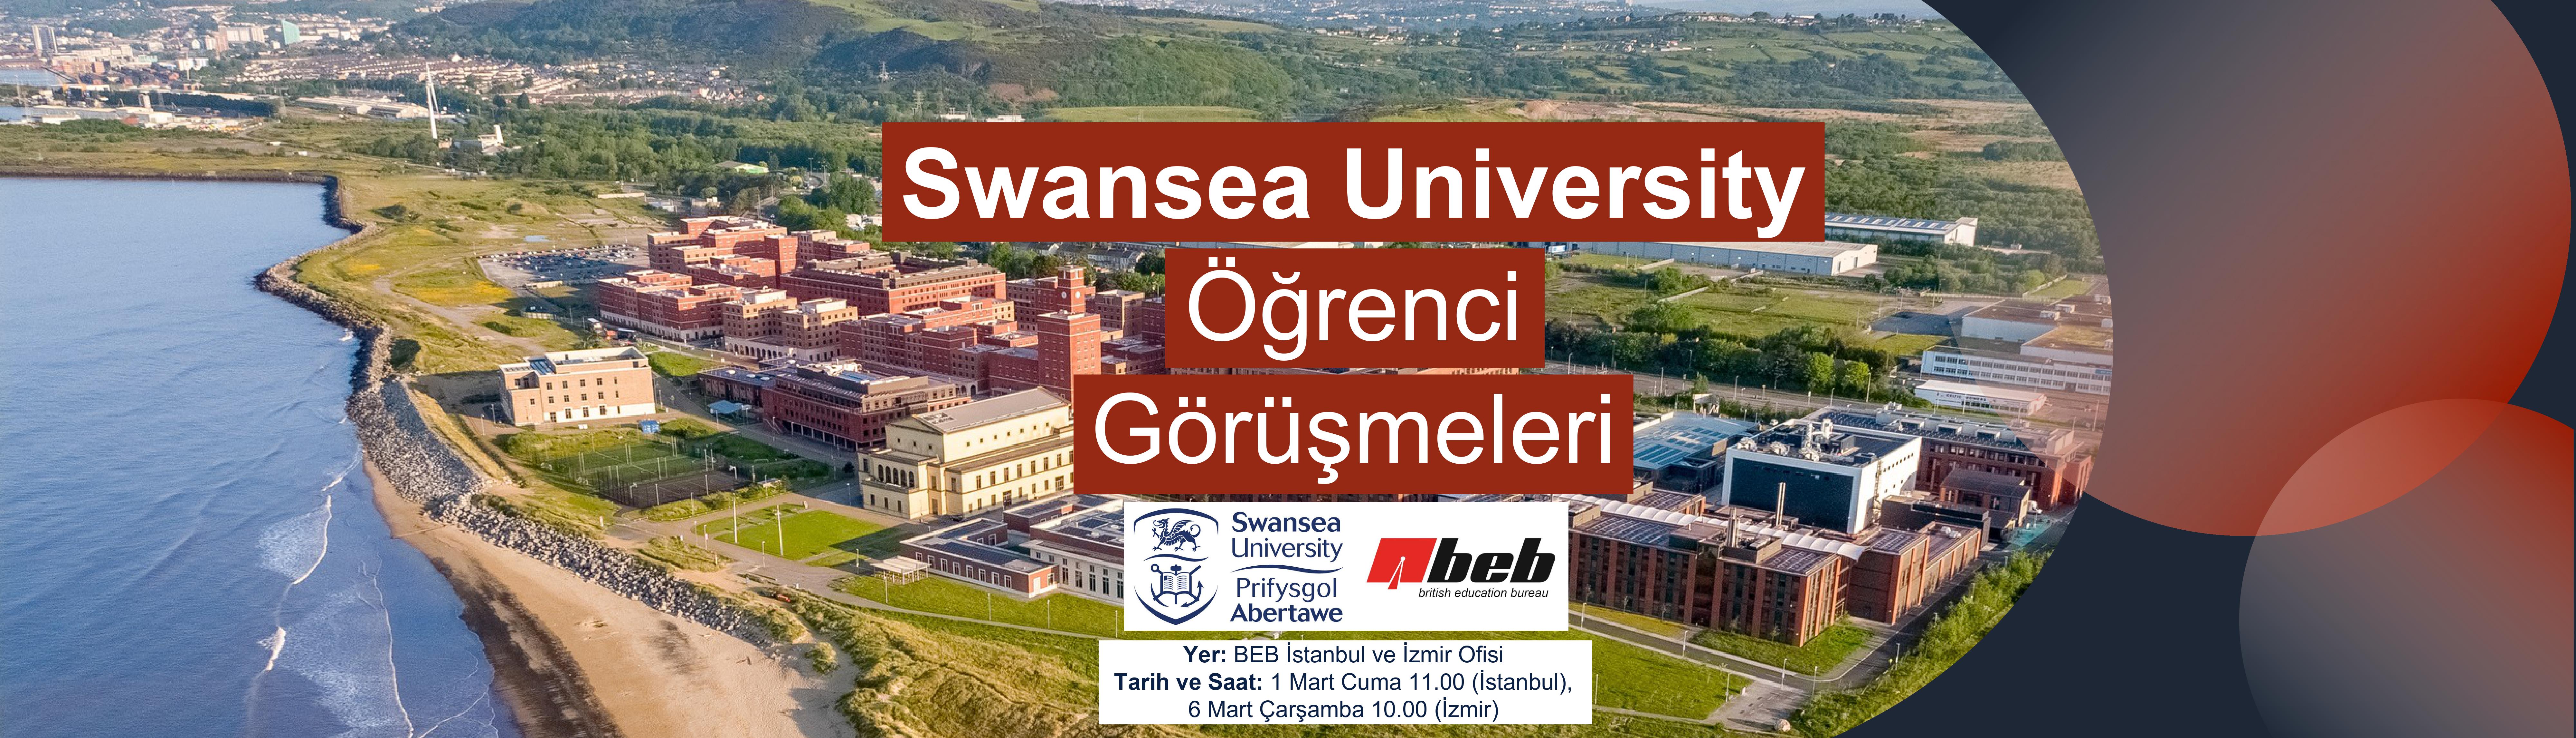 BEB-Ofisleri-Swansea-University-Ogrenci-Gorusmeleri